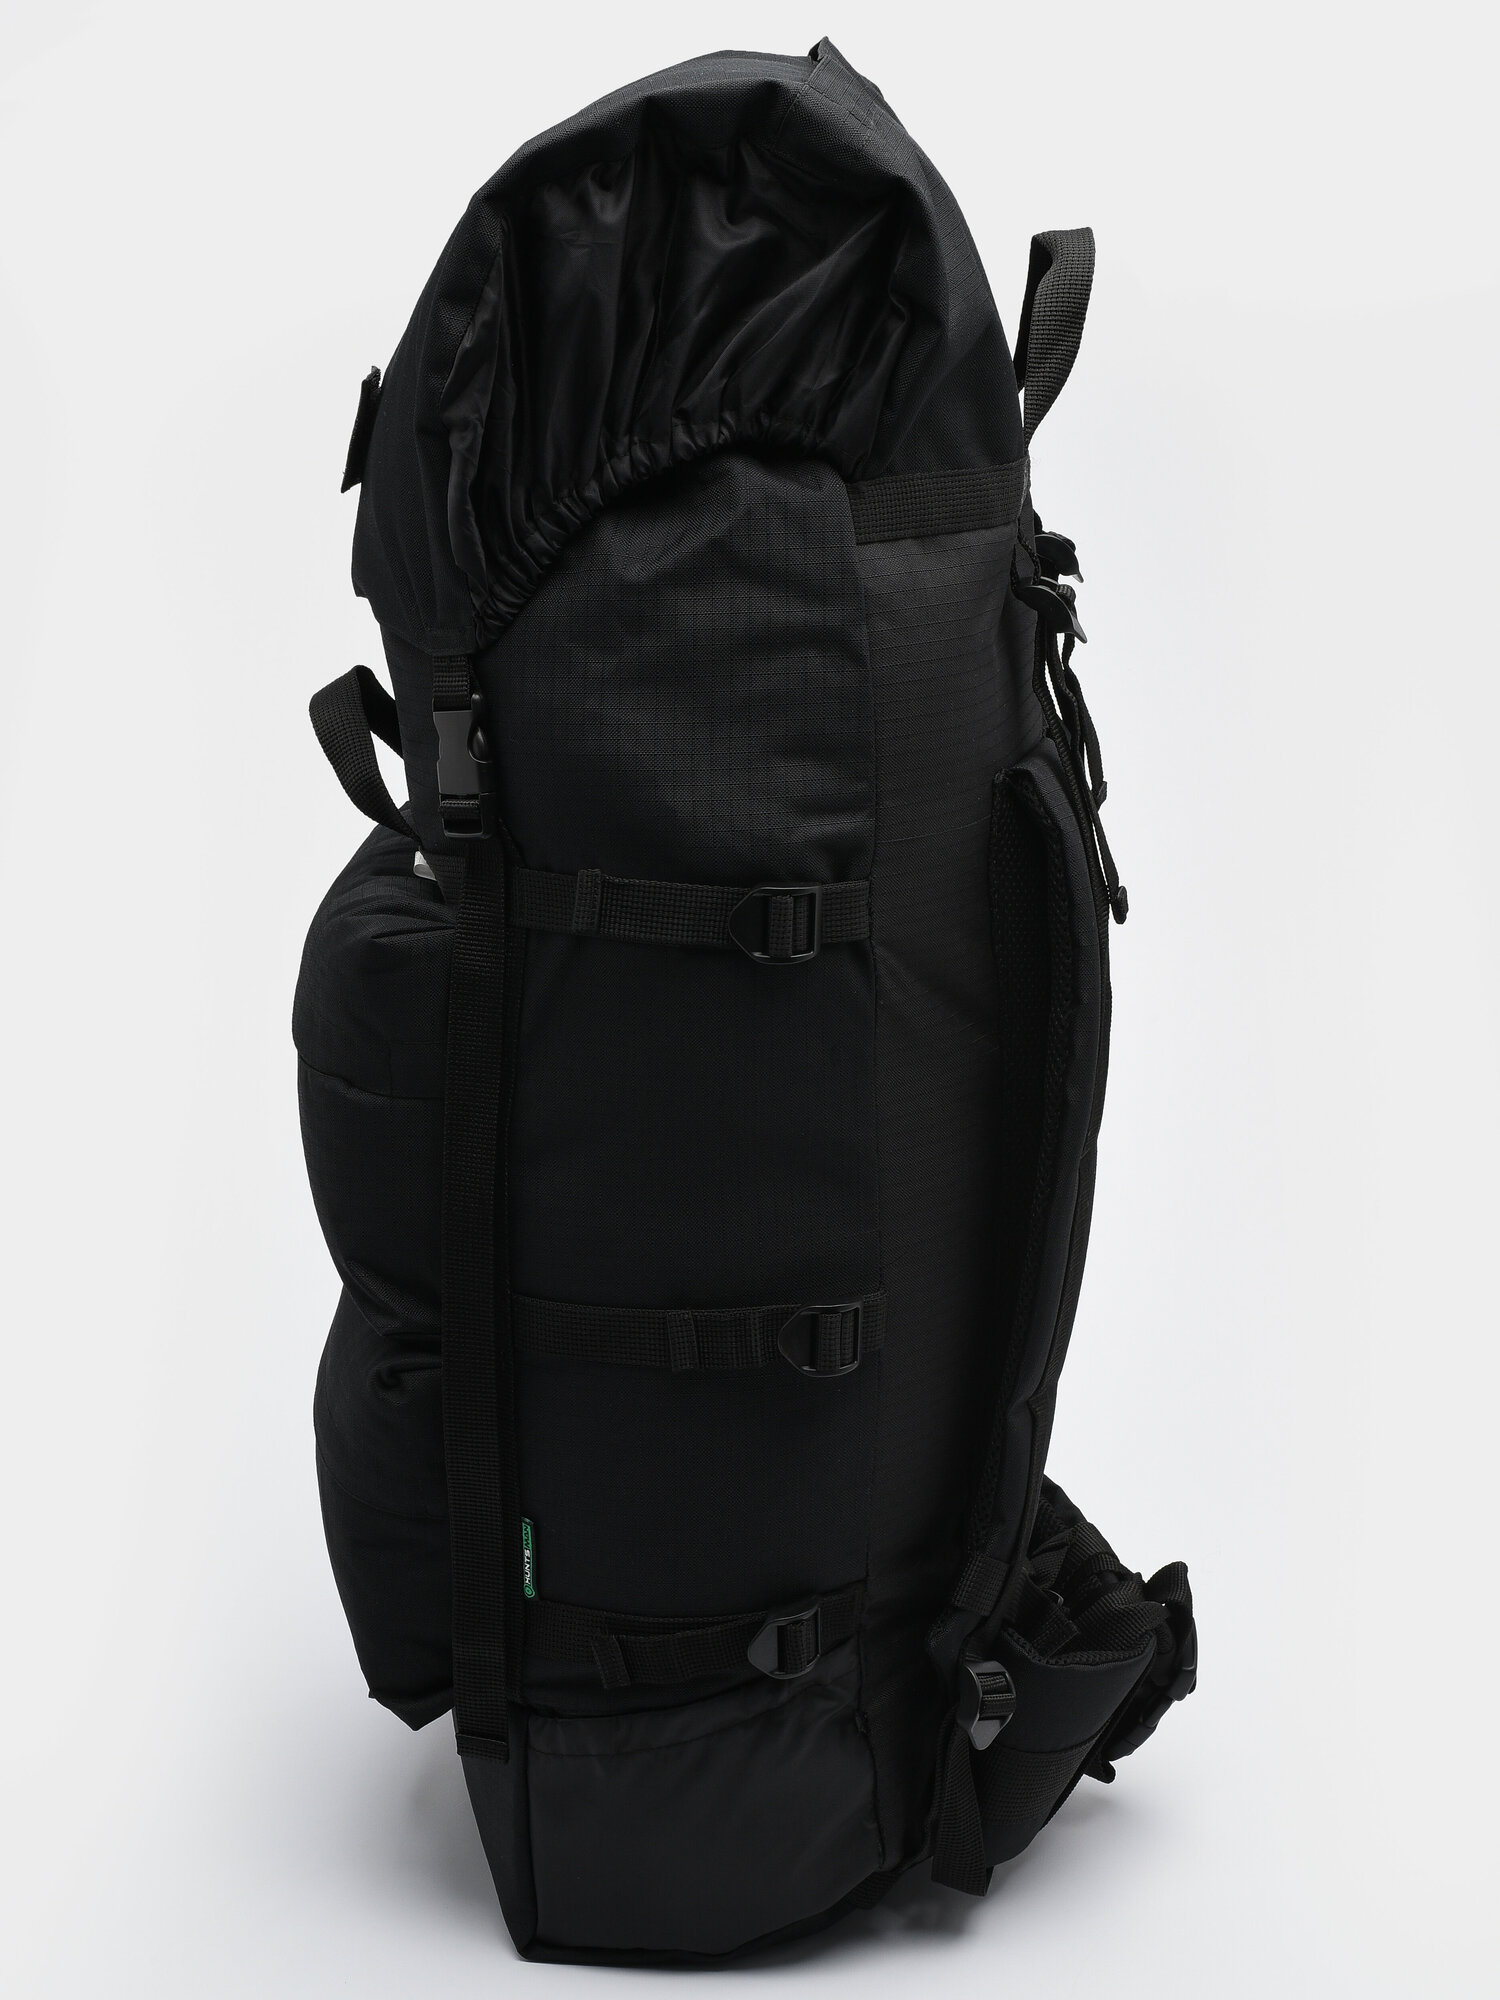 Рюкзак туристический, тактический Huntsman Пикбастон охотничий, походный, военный 100 л, ткань Оксфорд рипстоп, цвет черный